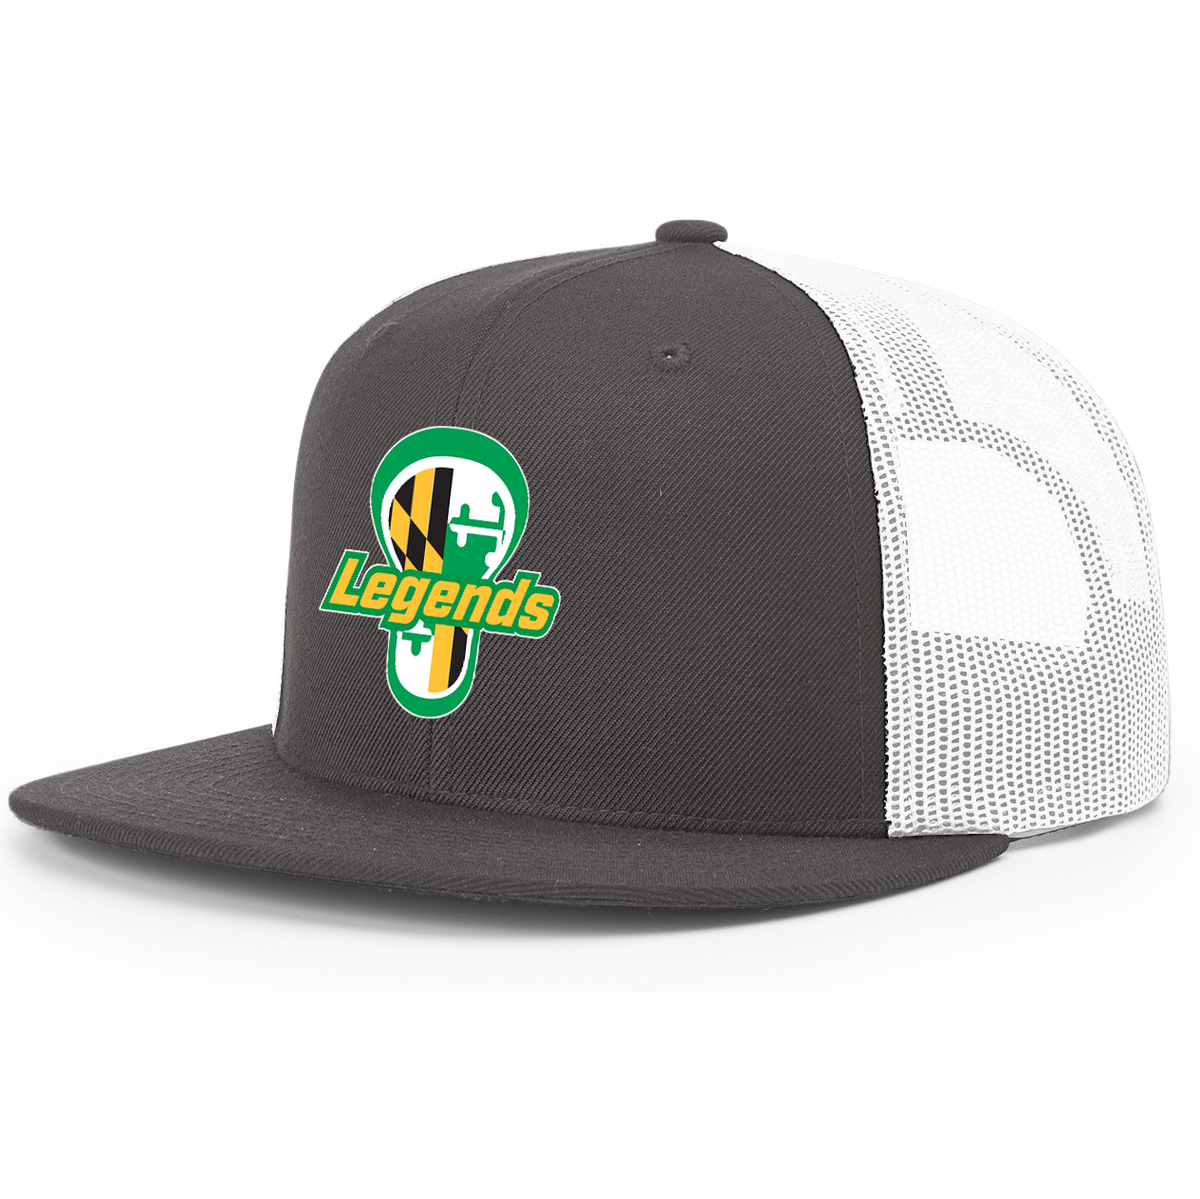 Legends Lacrosse Low-Profile Trucker Hat